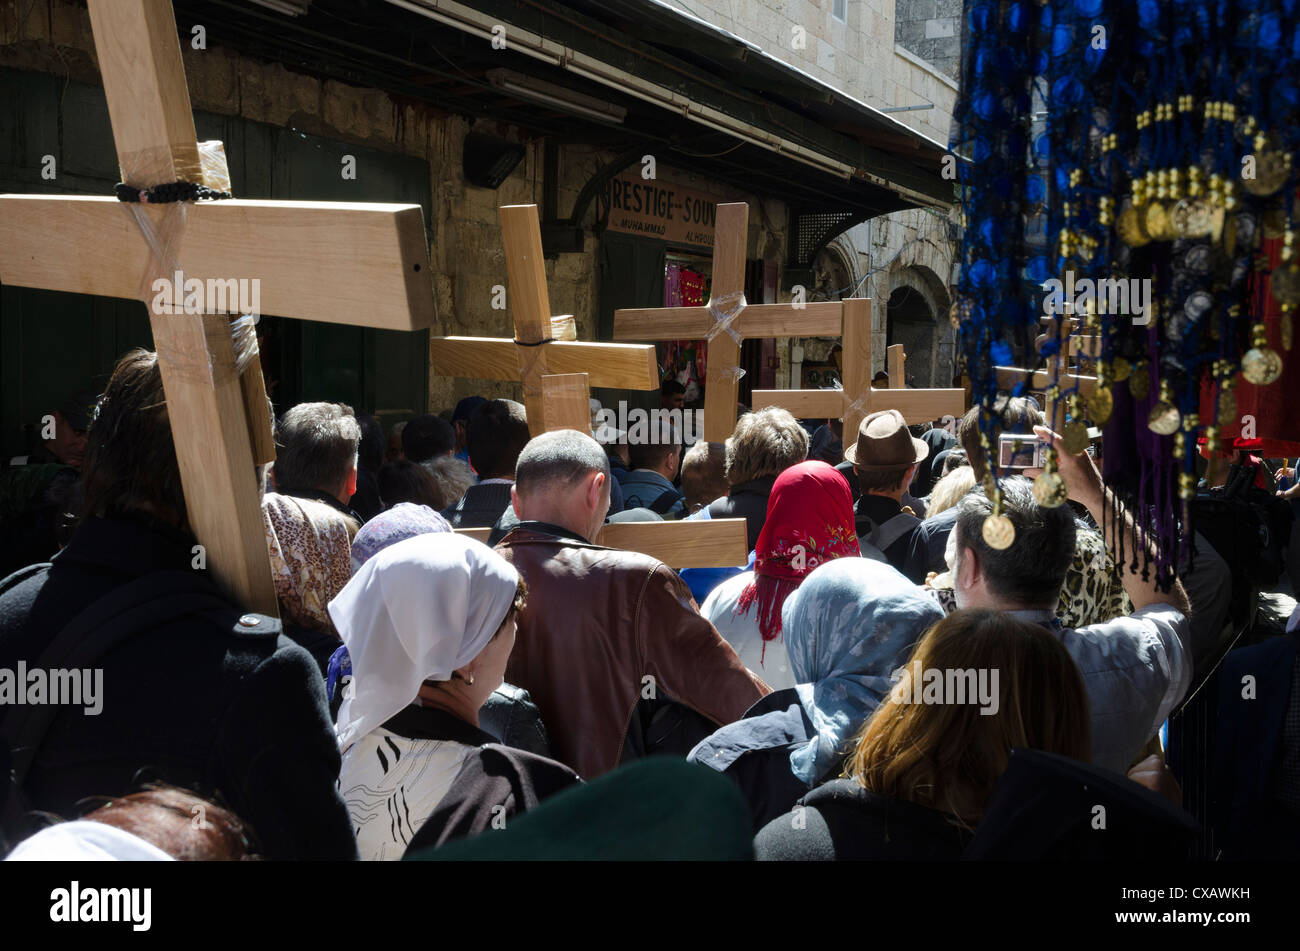 Les processions du Vendredi Saint orthodoxe sur le chemin de la Croix. Vieille ville, Jérusalem, Israël, Moyen Orient Banque D'Images